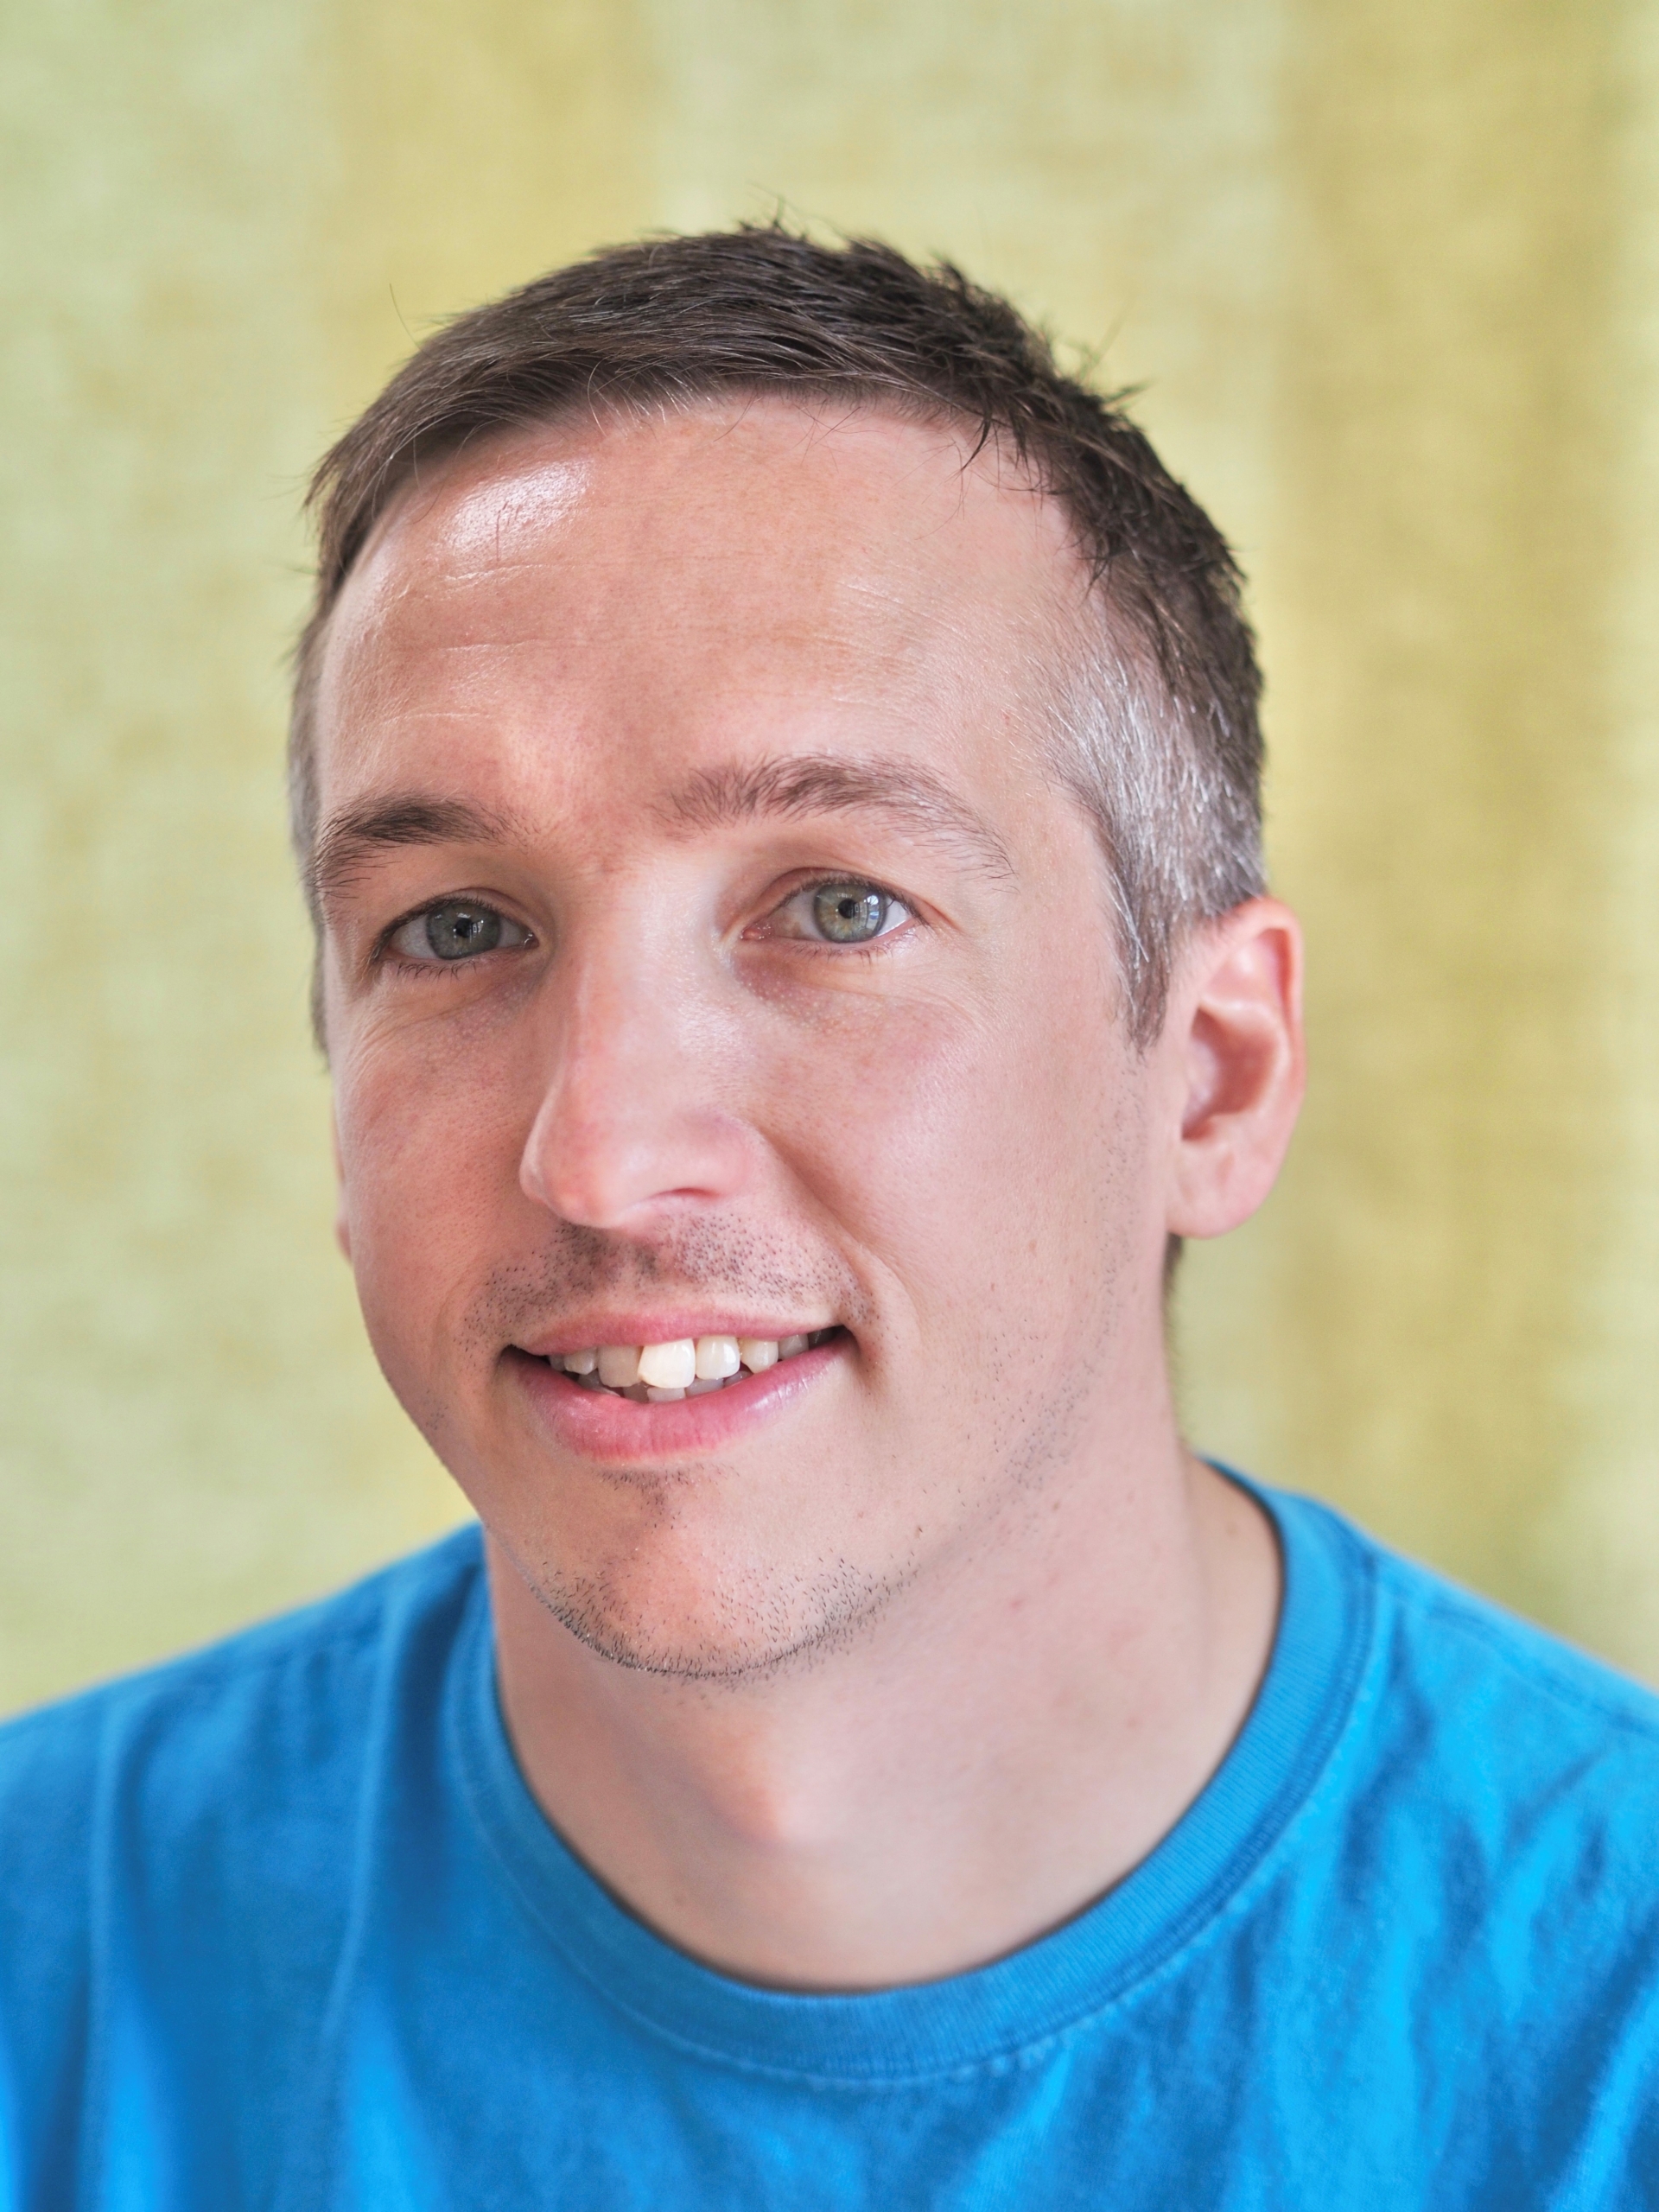 Jon Butler, a smiling man in a blue shirt